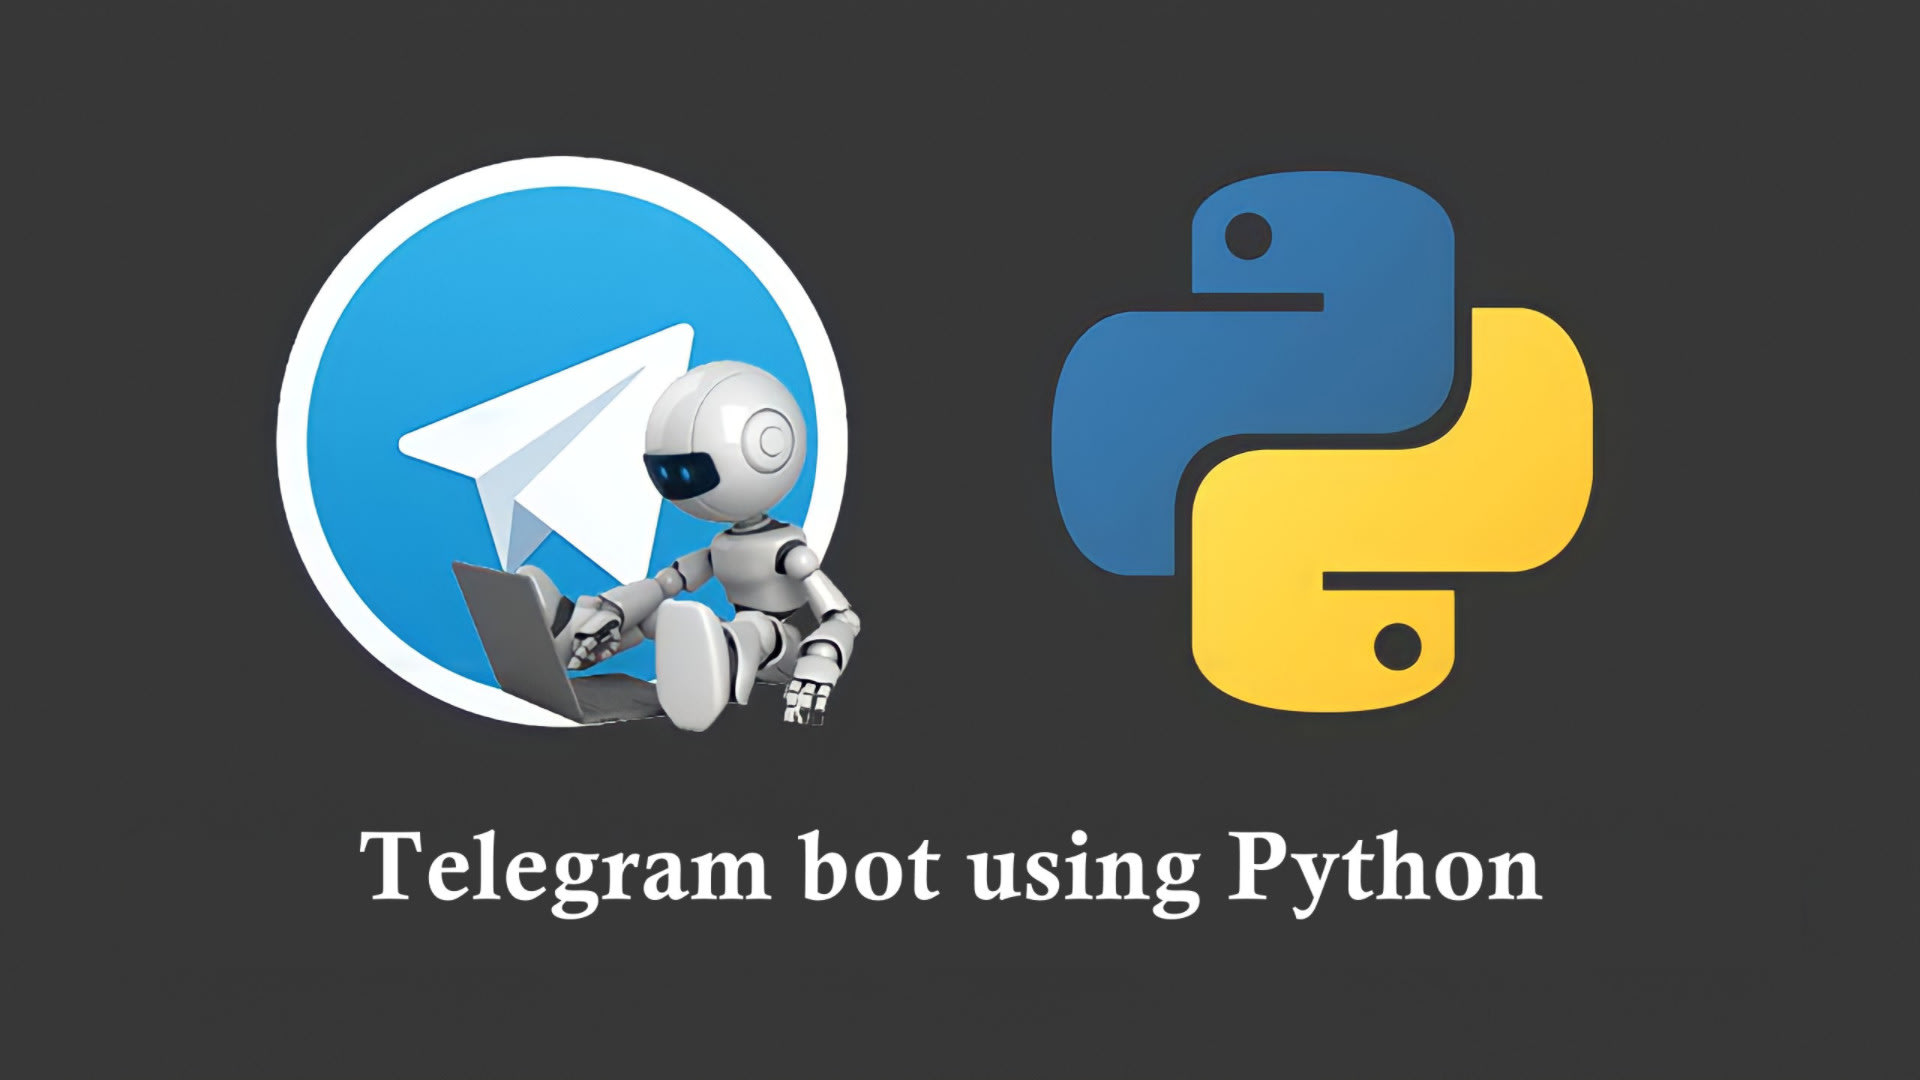 Телеграмм библиотека python. Телеграм бот. Бот на Пайтон. Python Telegram bot. Телеграмм бот на питоне.